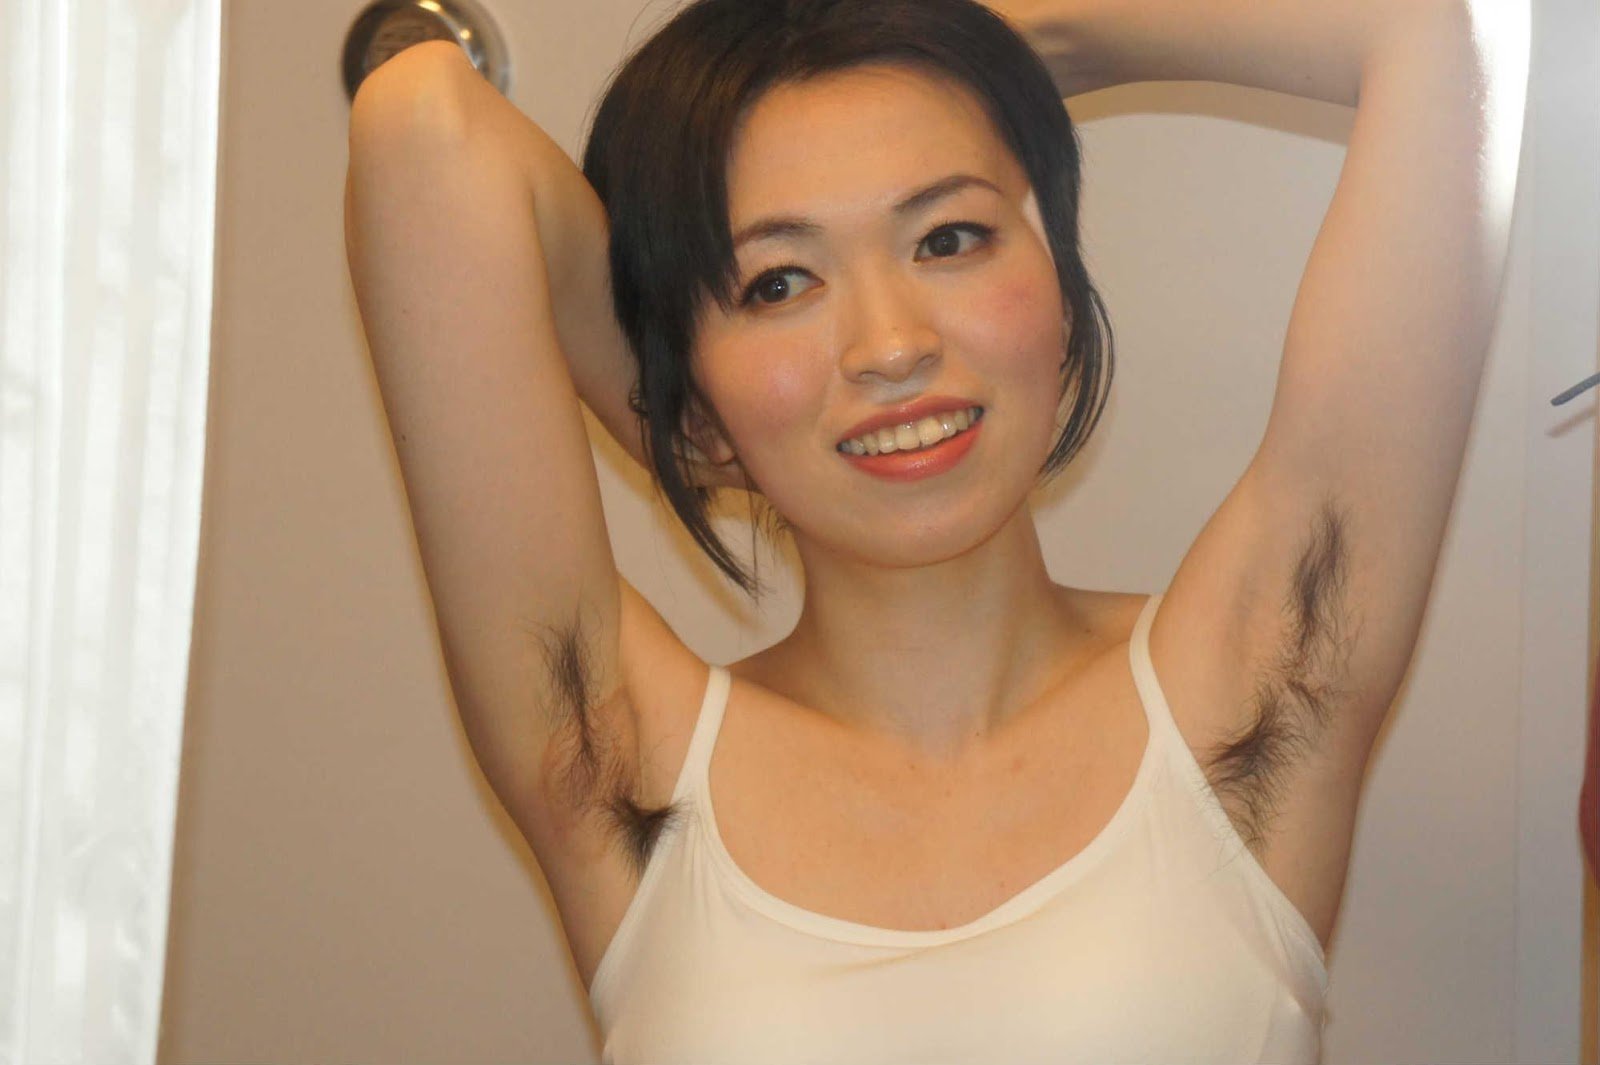 Hairy Asian Girls Naked